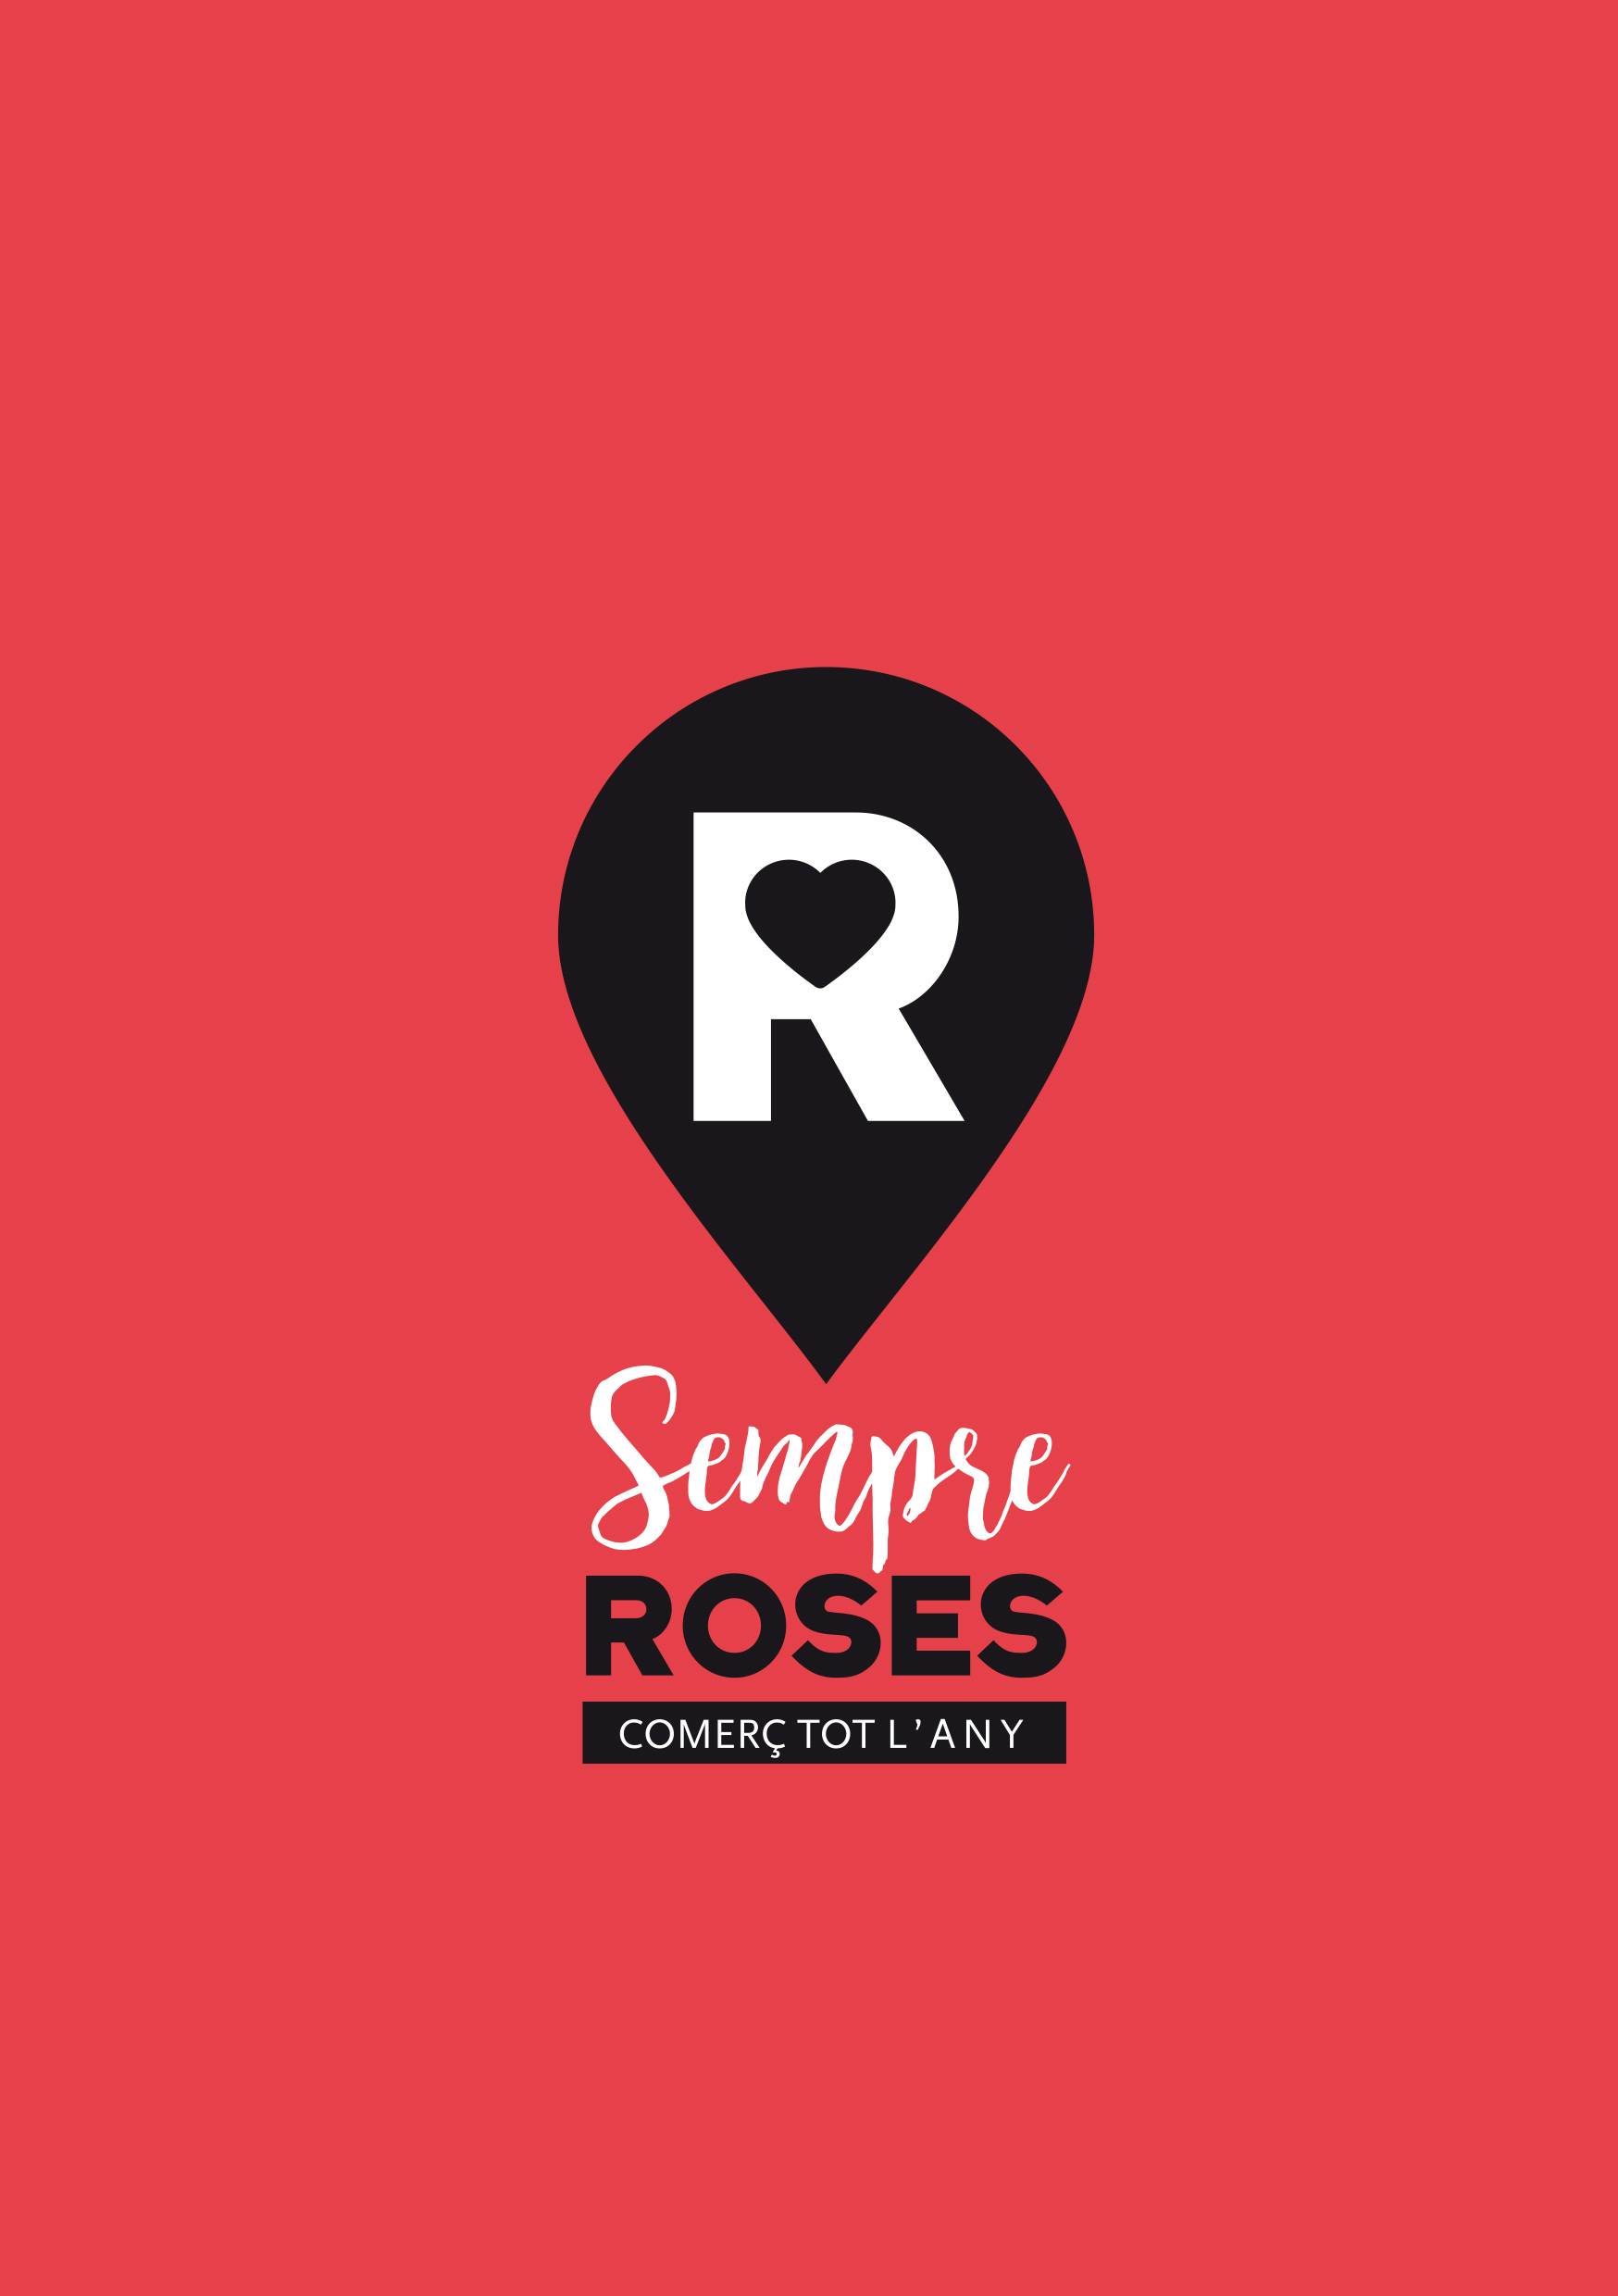 Roses vol premiar l’excel·lència del seu comerç i crea el segell de qualitat “Sempre Roses, comerç tot l’any”